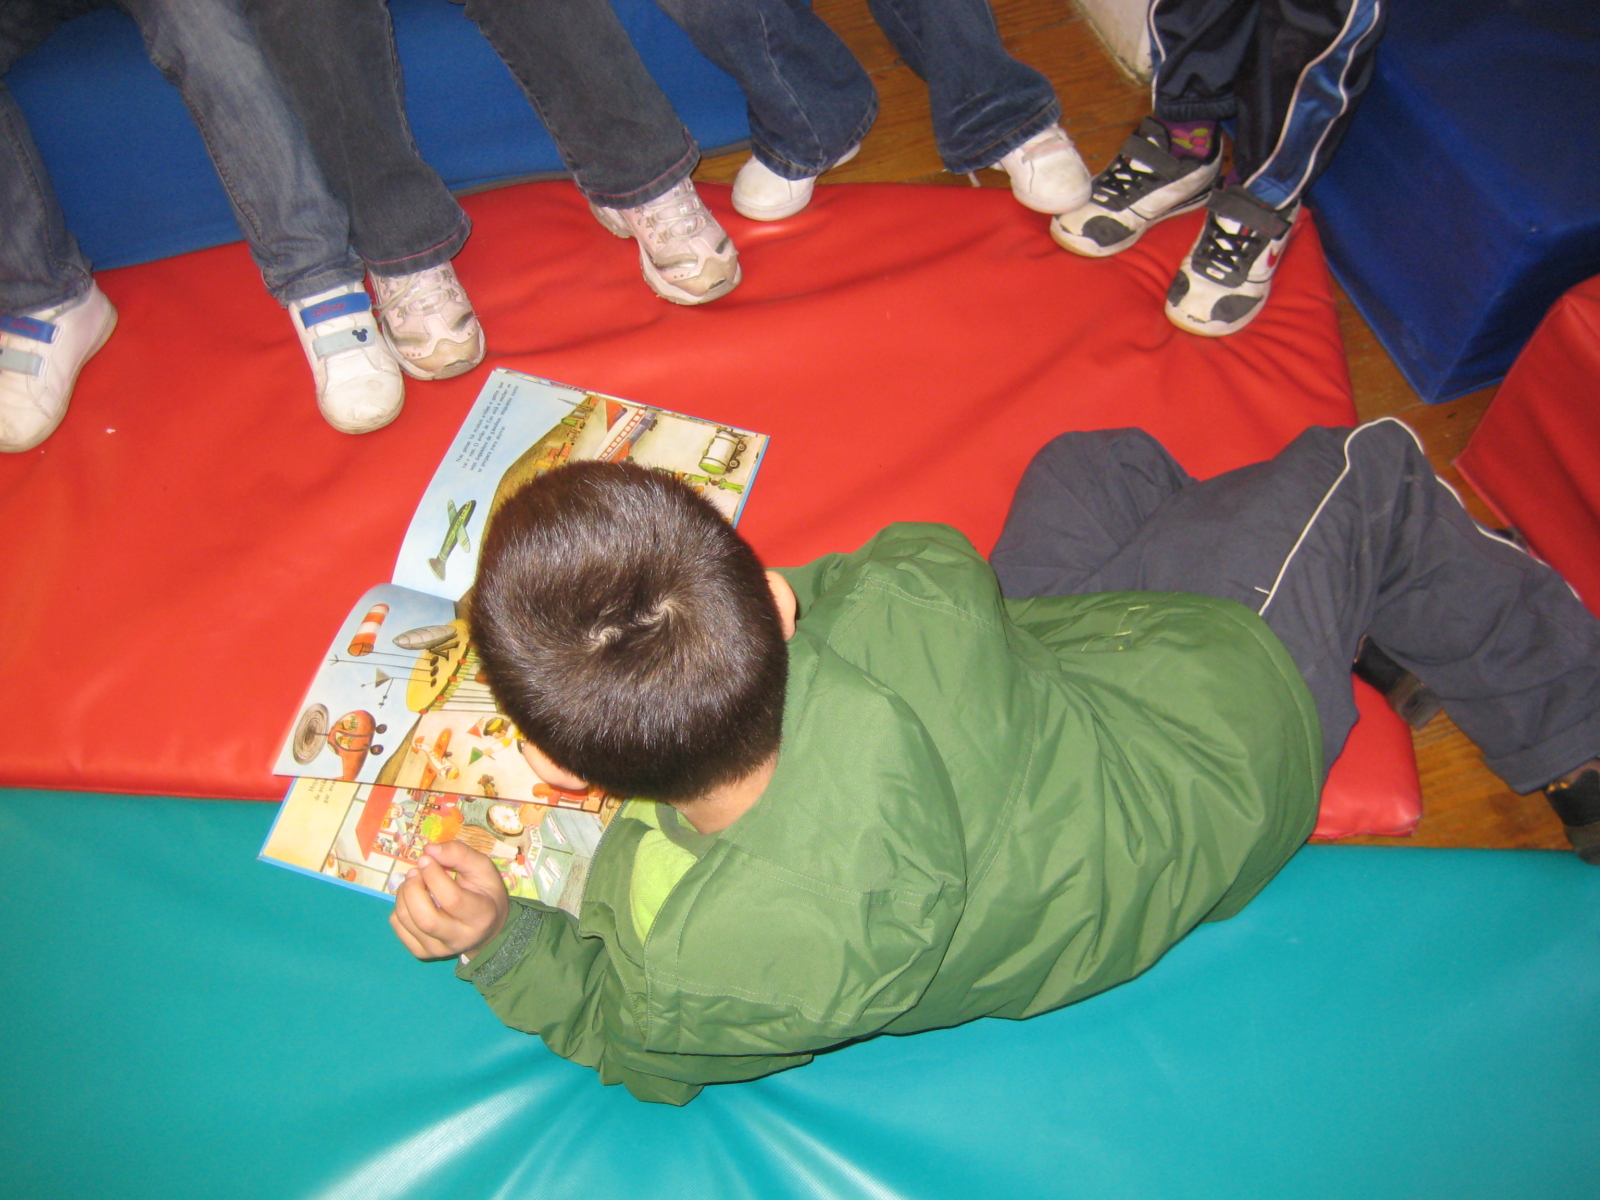 Criança deitada com um livro numa atividade em grupo